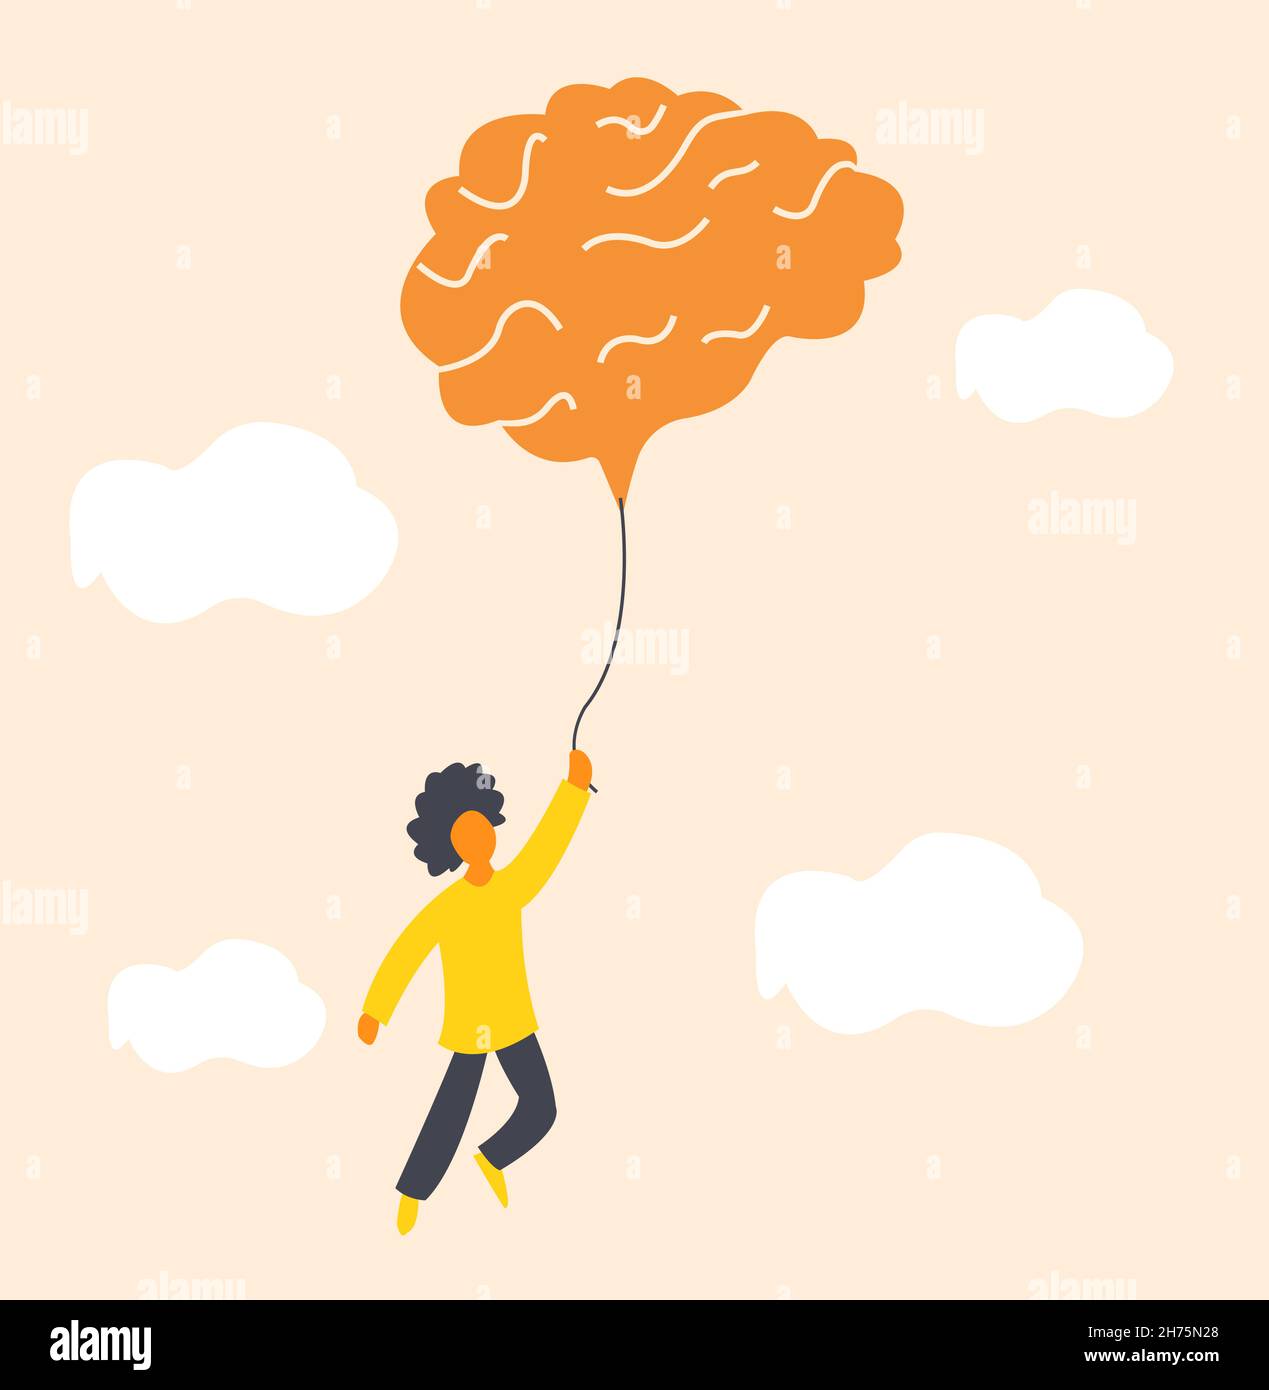 Illustrazione di problema di salute mentale, un ragazzo che vola nel cielo con un grande pallone a forma di cervello che simboleggia l'importanza del rilassamento e della meditazione Illustrazione Vettoriale